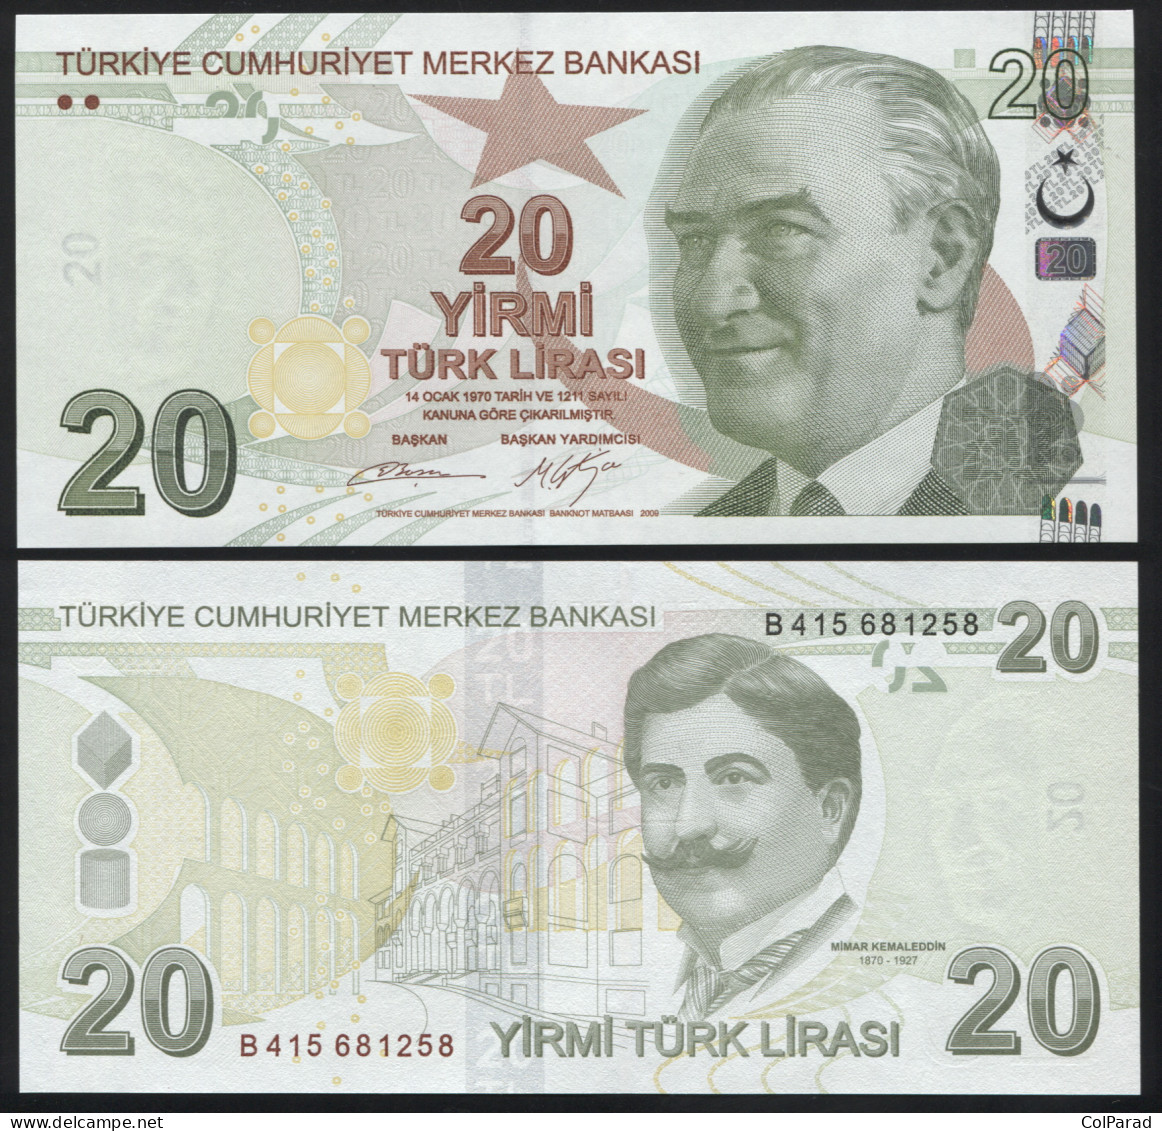 TURKEY 20 TÜRK LIRASI - 2009 (2012) - Paper Unc - P.224b Banknote - Turkey